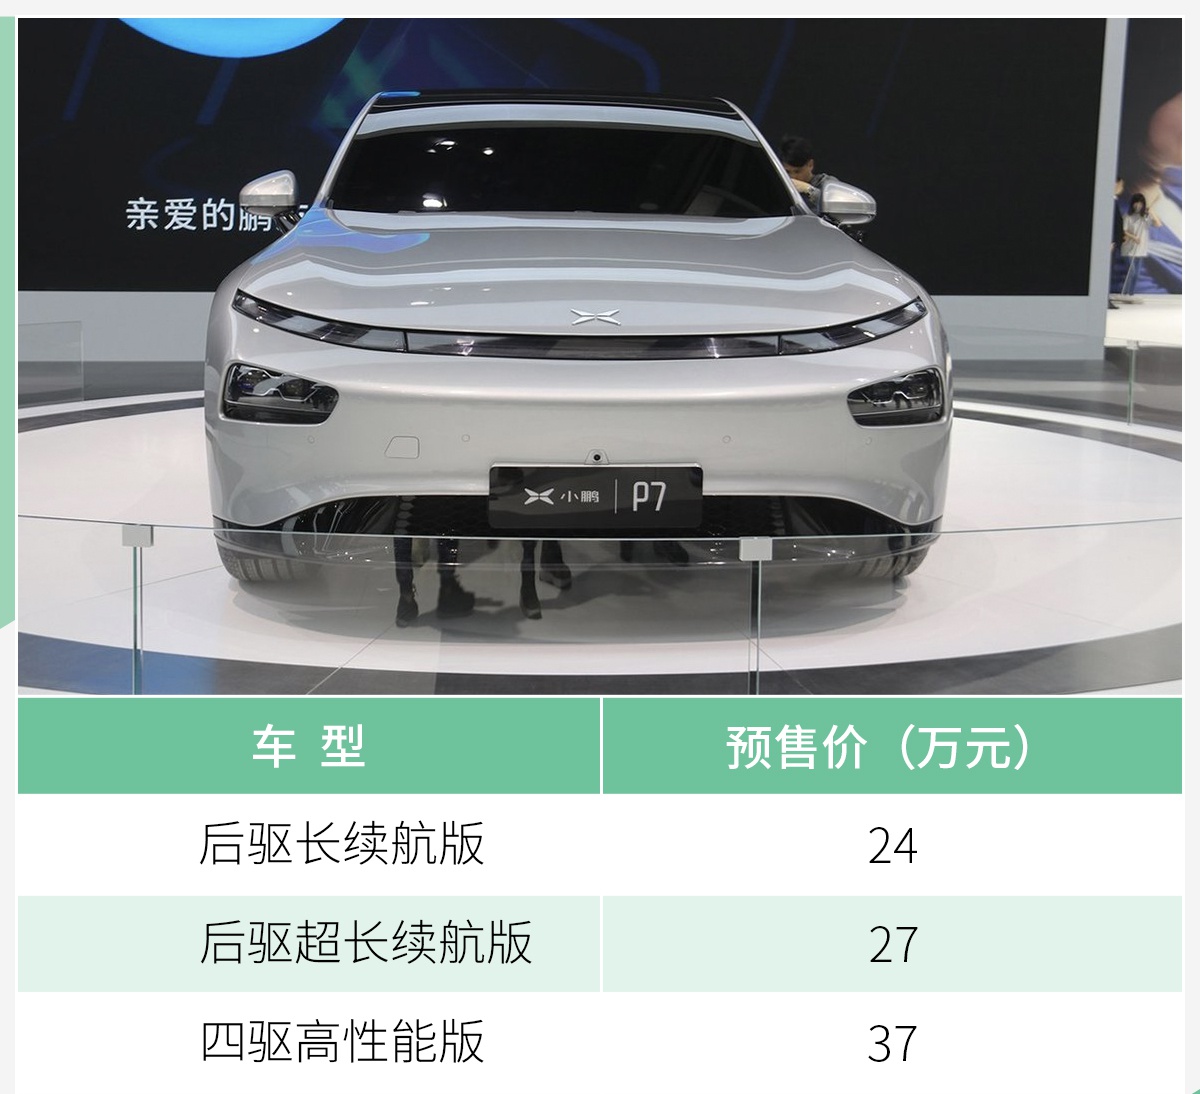 年产10万辆/获得生产资质 小鹏收购广东福迪汽车